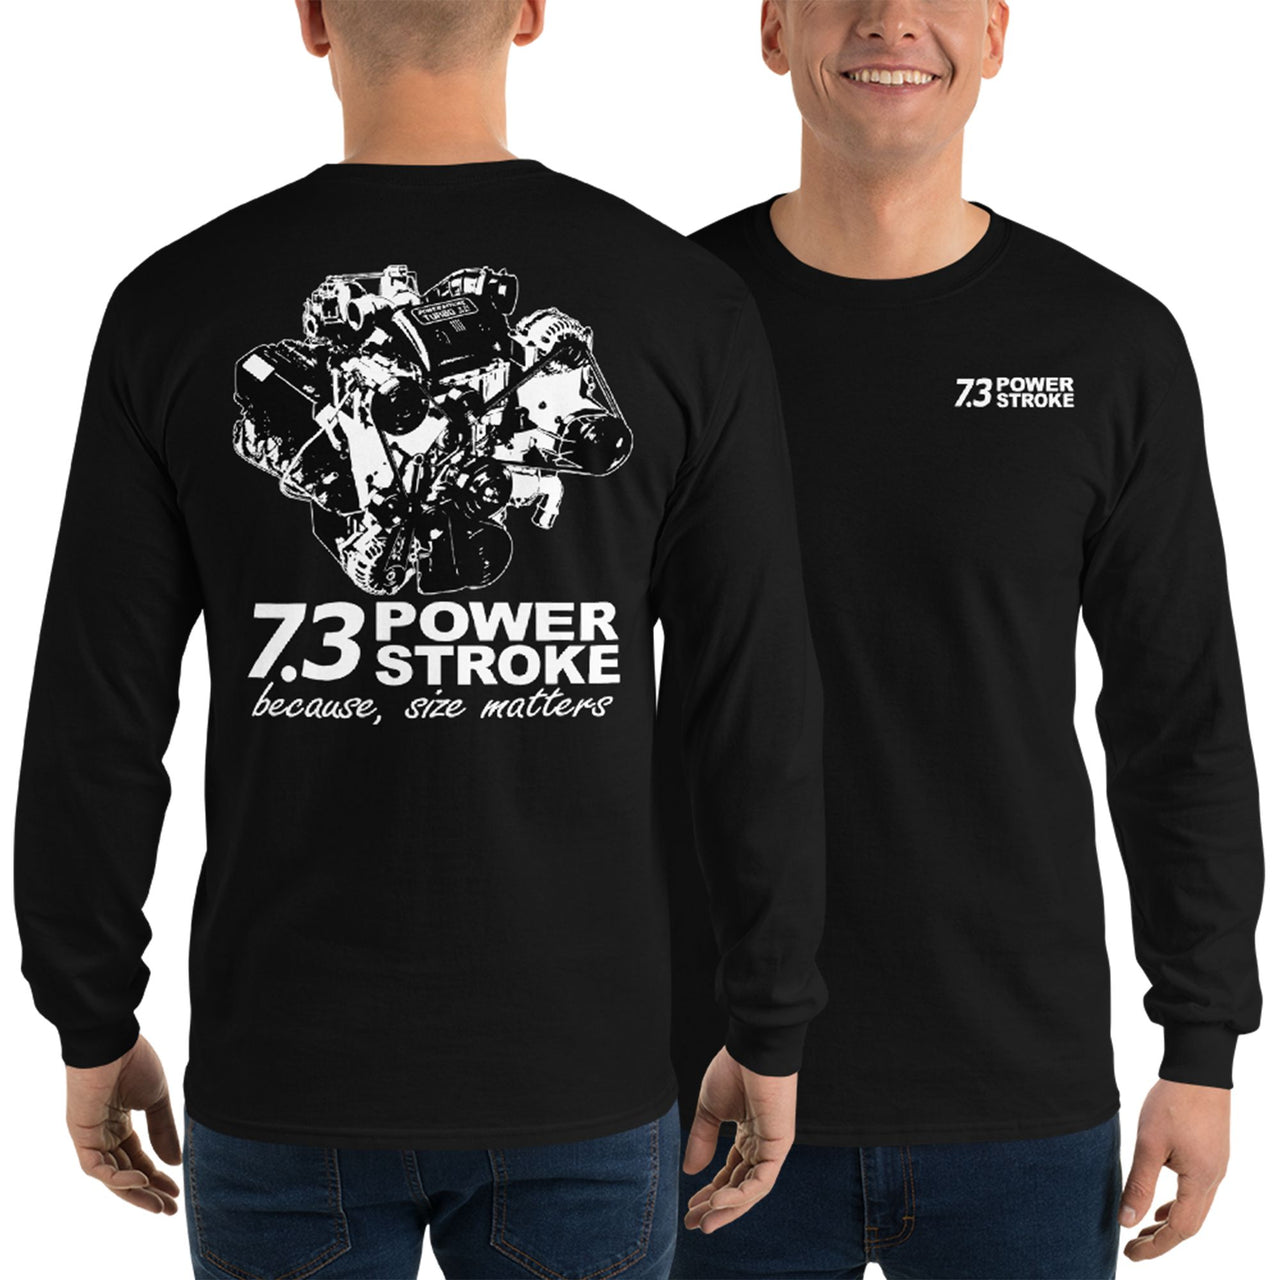 7.3 Power Stroke Size Matters Long Sleeve T-Shirt modeled in black